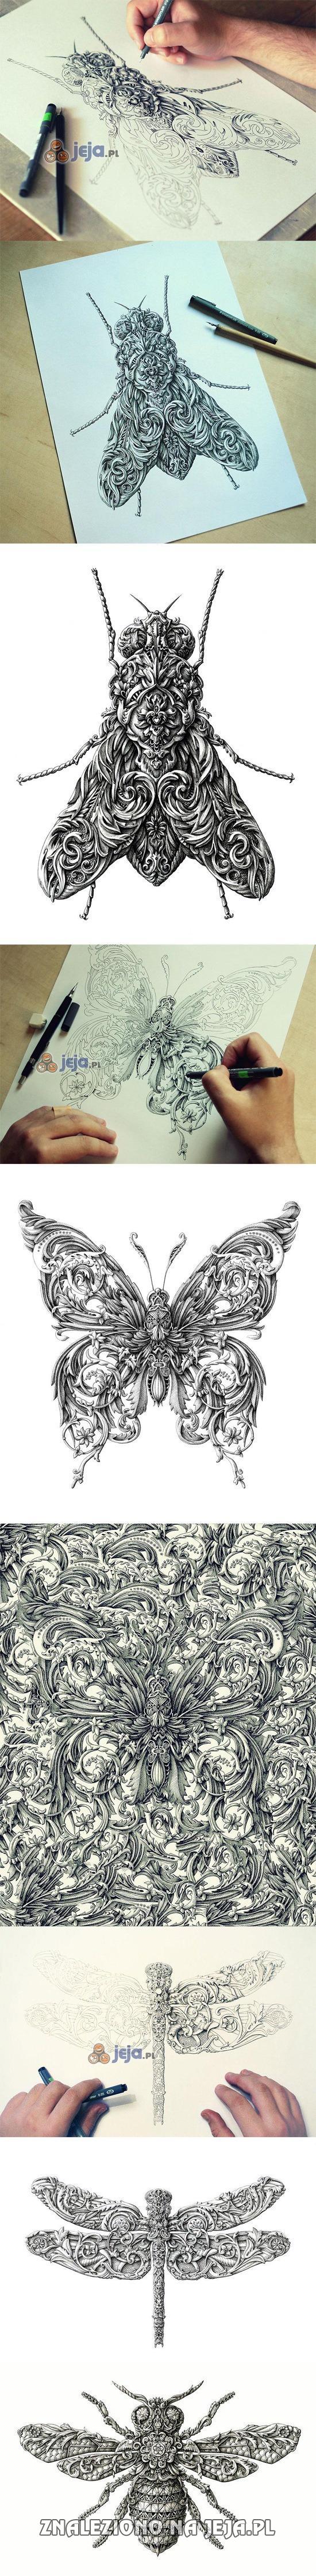 Rysunki owadów w stylu renesansowym